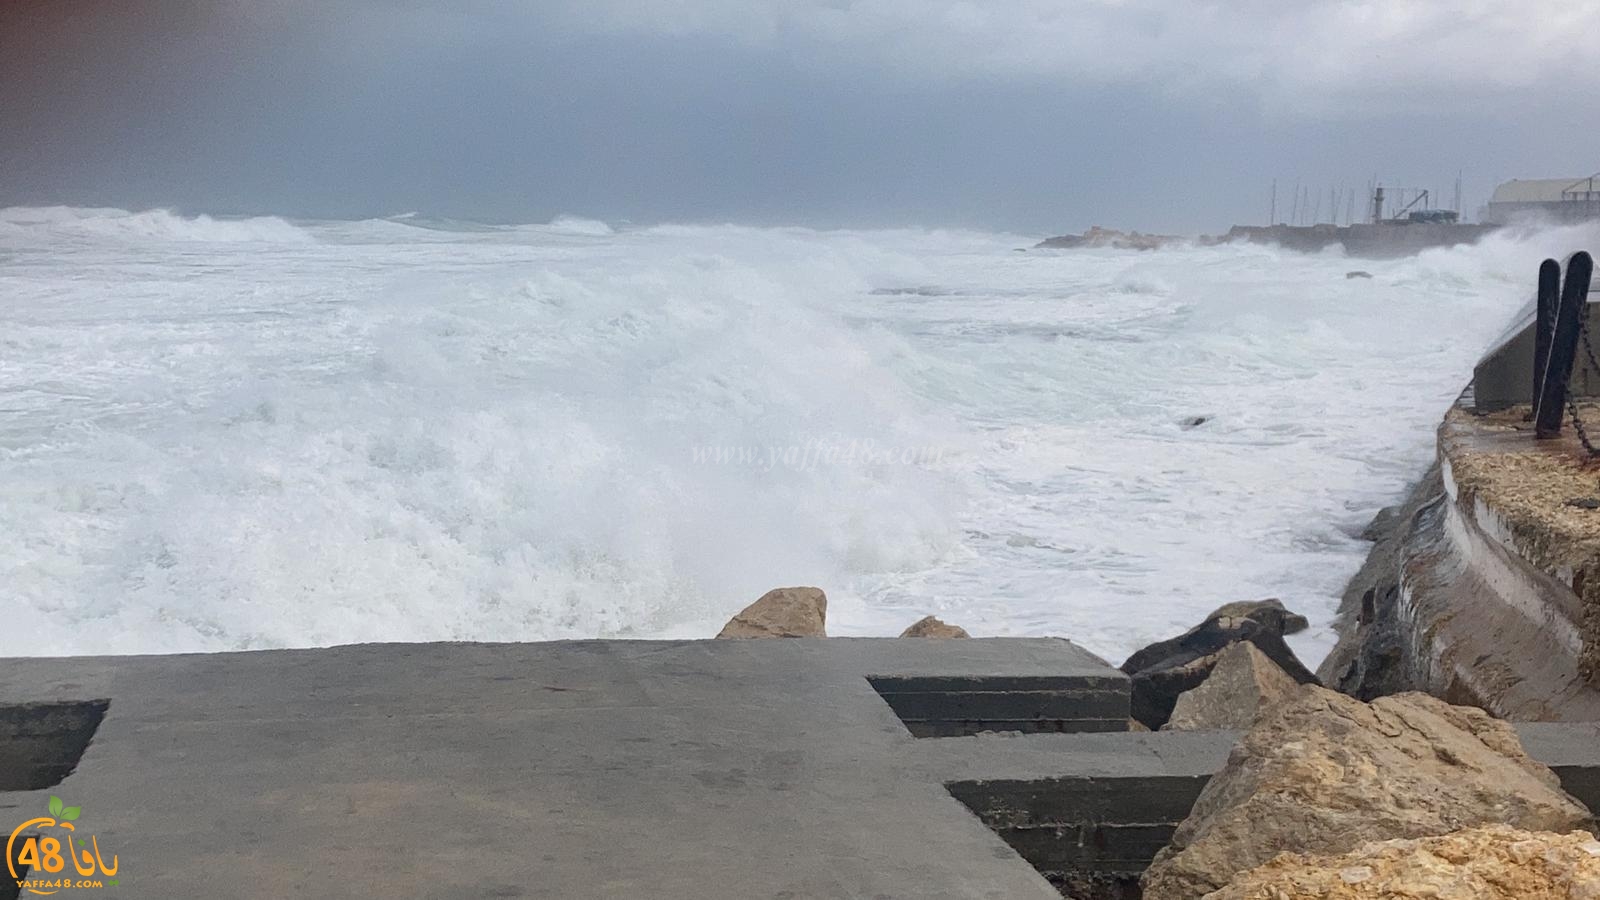   شاهد: بحر يافا الهائج مع استمرار تأثير المنخفض الجوّي 